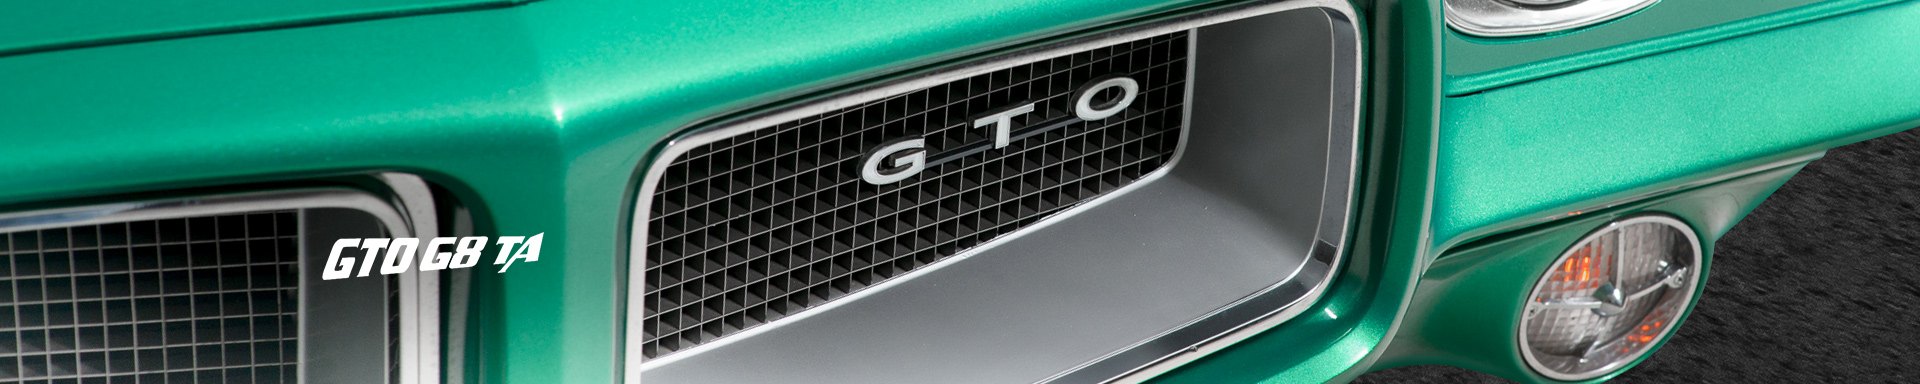 GTOG8TA Doors